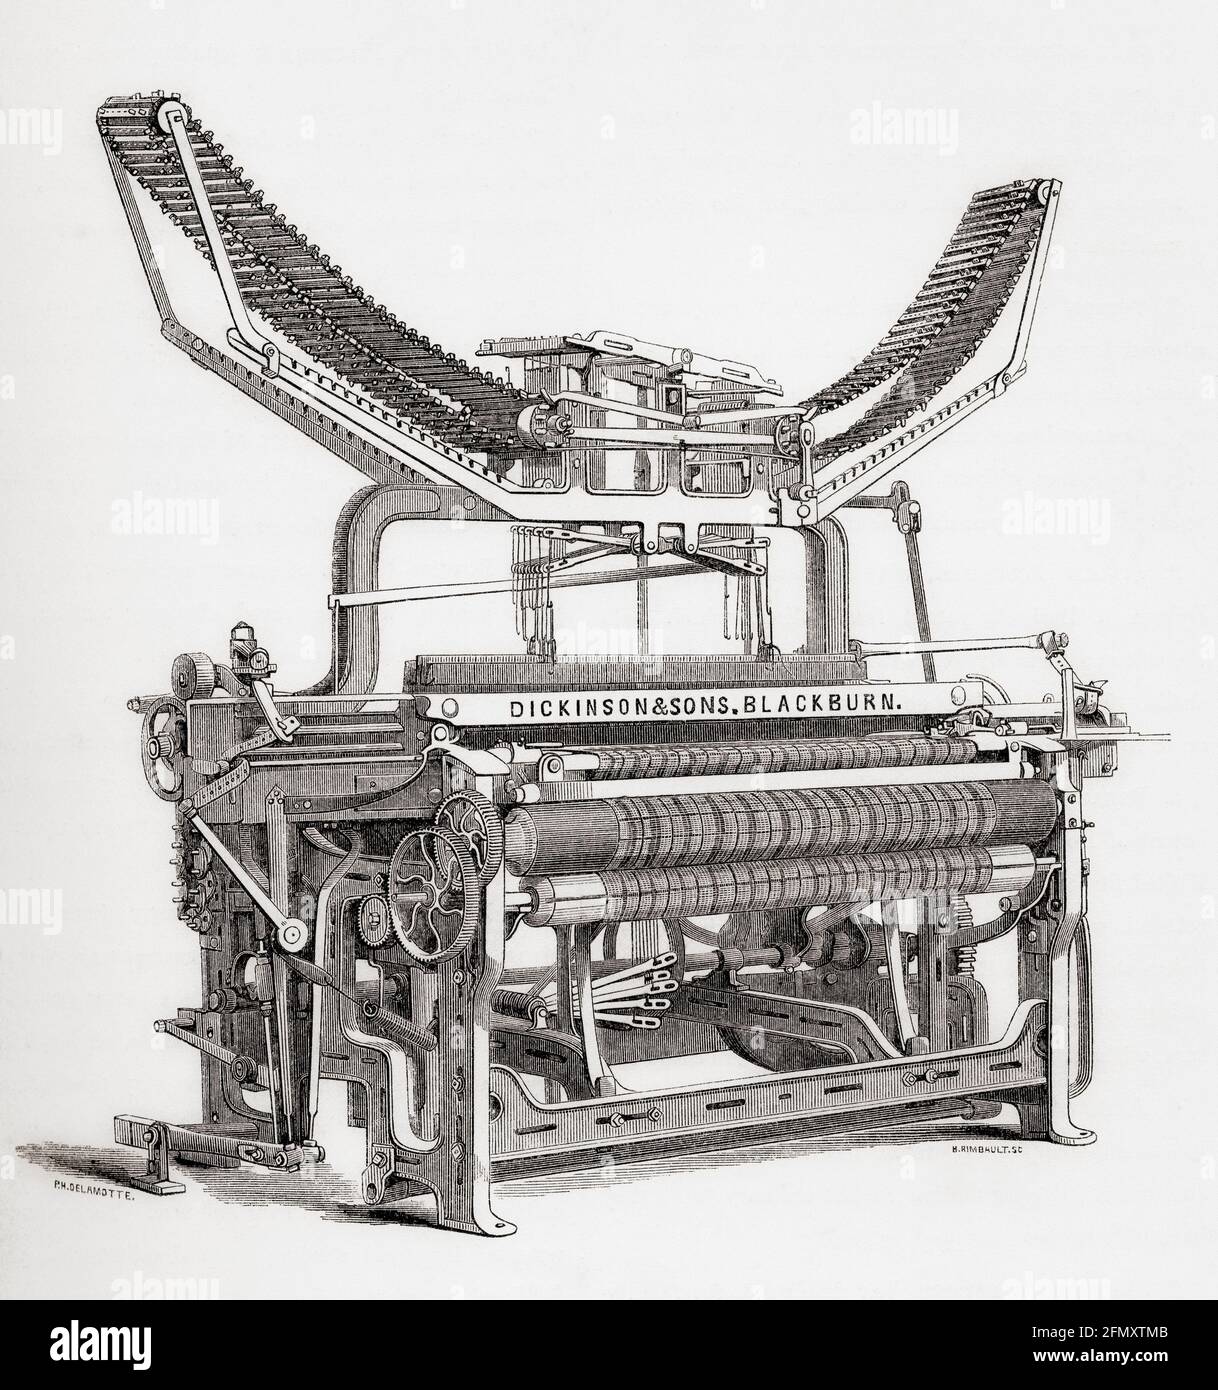 Il telaio di potere di Blackburn inventato da William Dickinson & Sons. Da una breve storia dell'esposizione internazionale del 1862, pubblicato nel 1862. Foto Stock